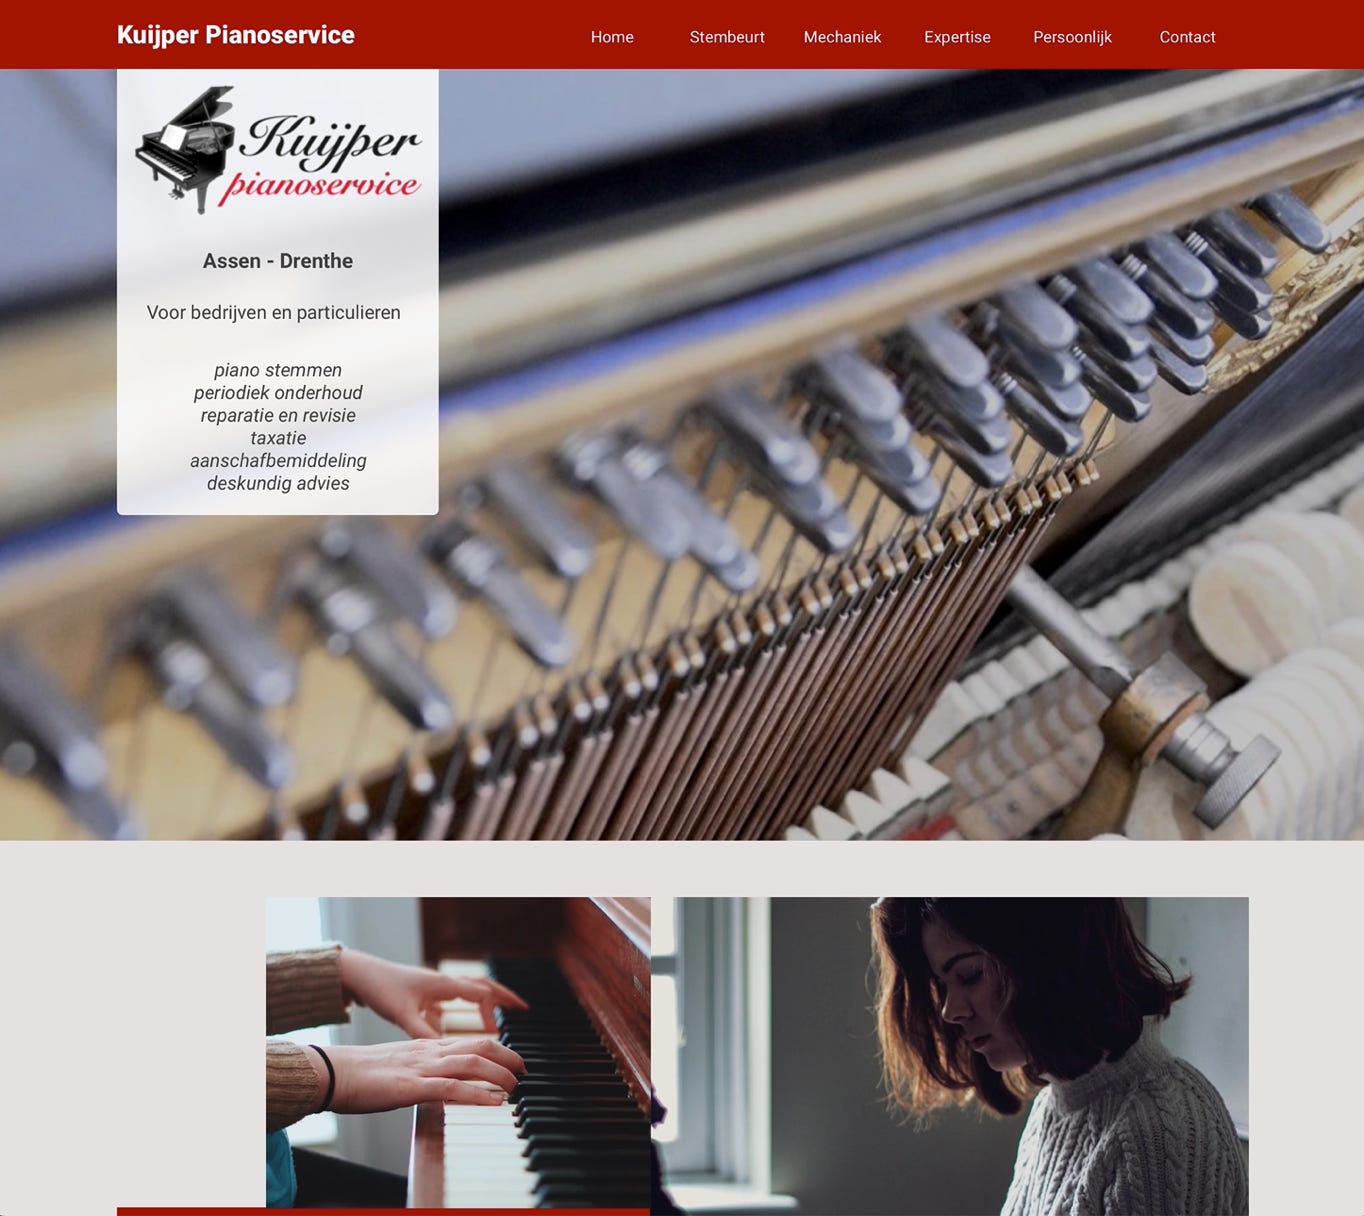 Homepage of the Kuijper Pianoservice website